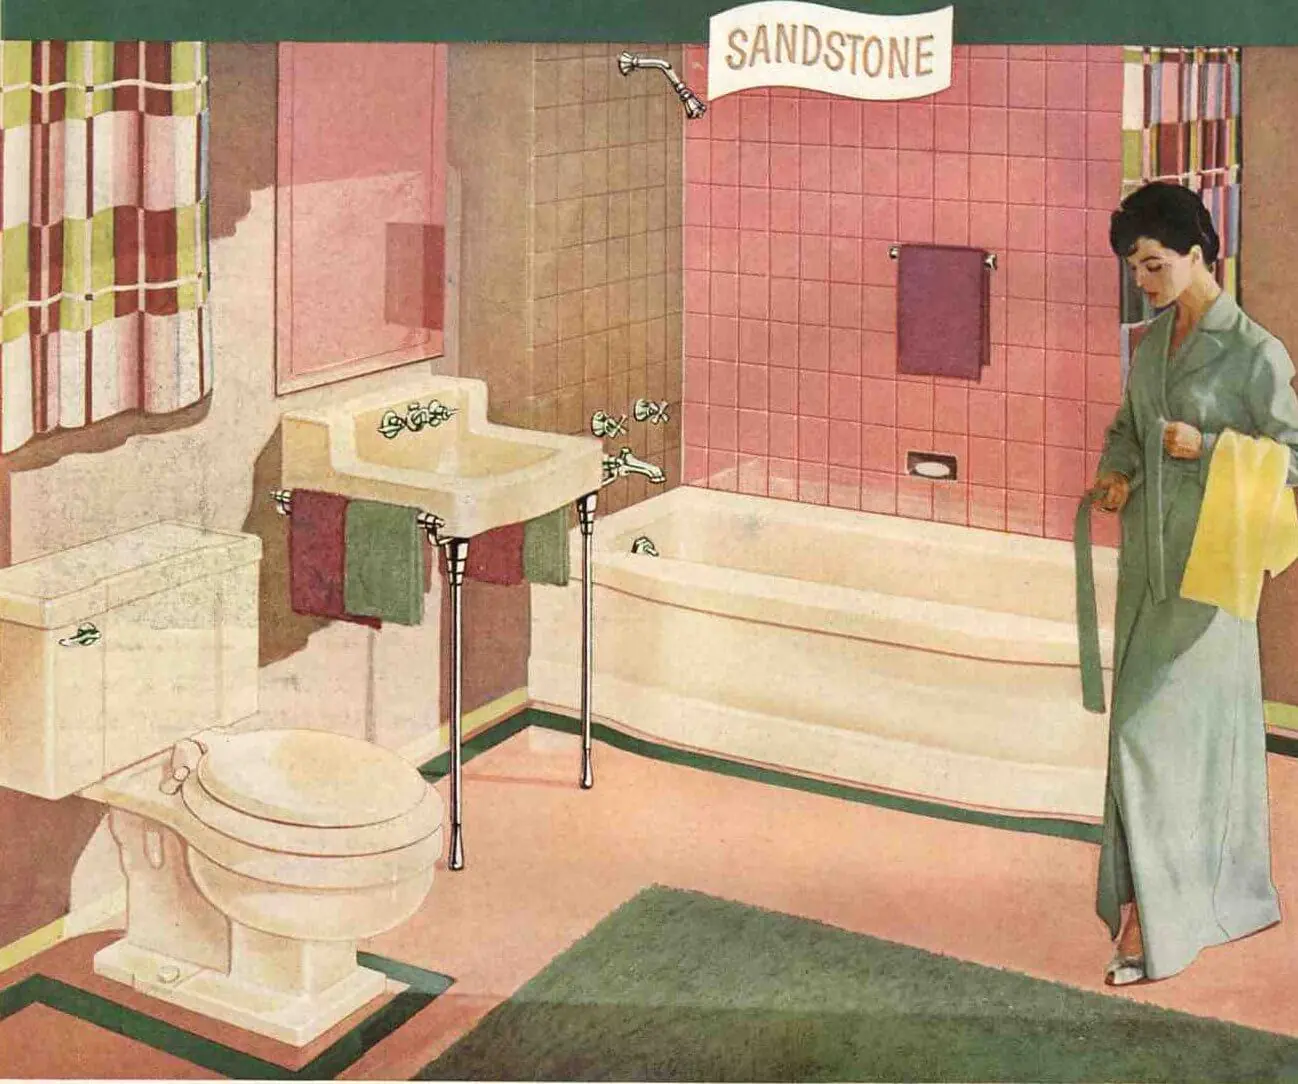 1954-briggs-sandstone-and-pink-bathroom.jpg